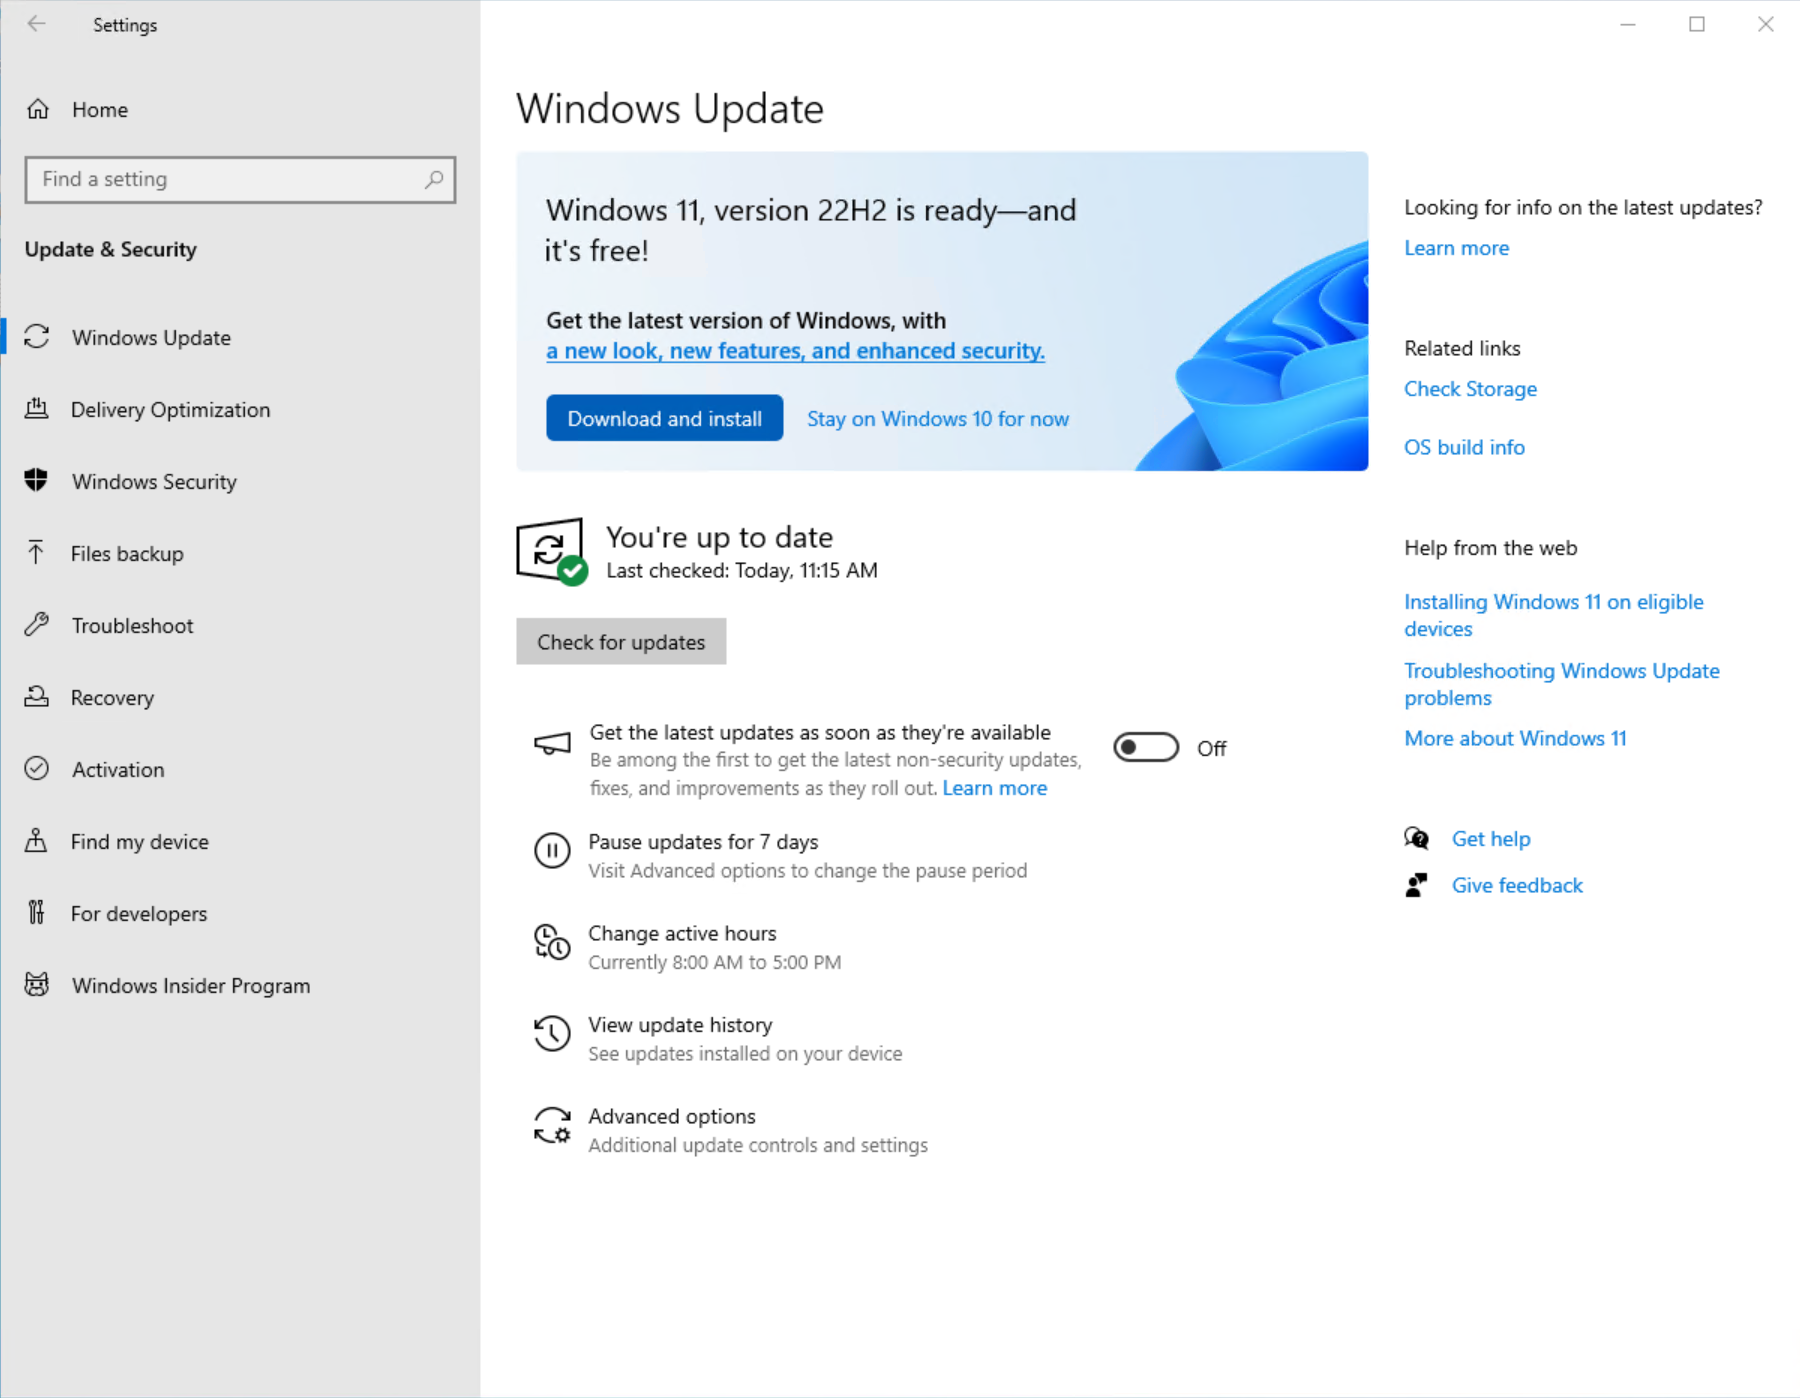 Schermopname van de pagina Windows Update in Instellingen die laat zien dat Windows 11 klaar is om te worden gedownload en geïnstalleerd.